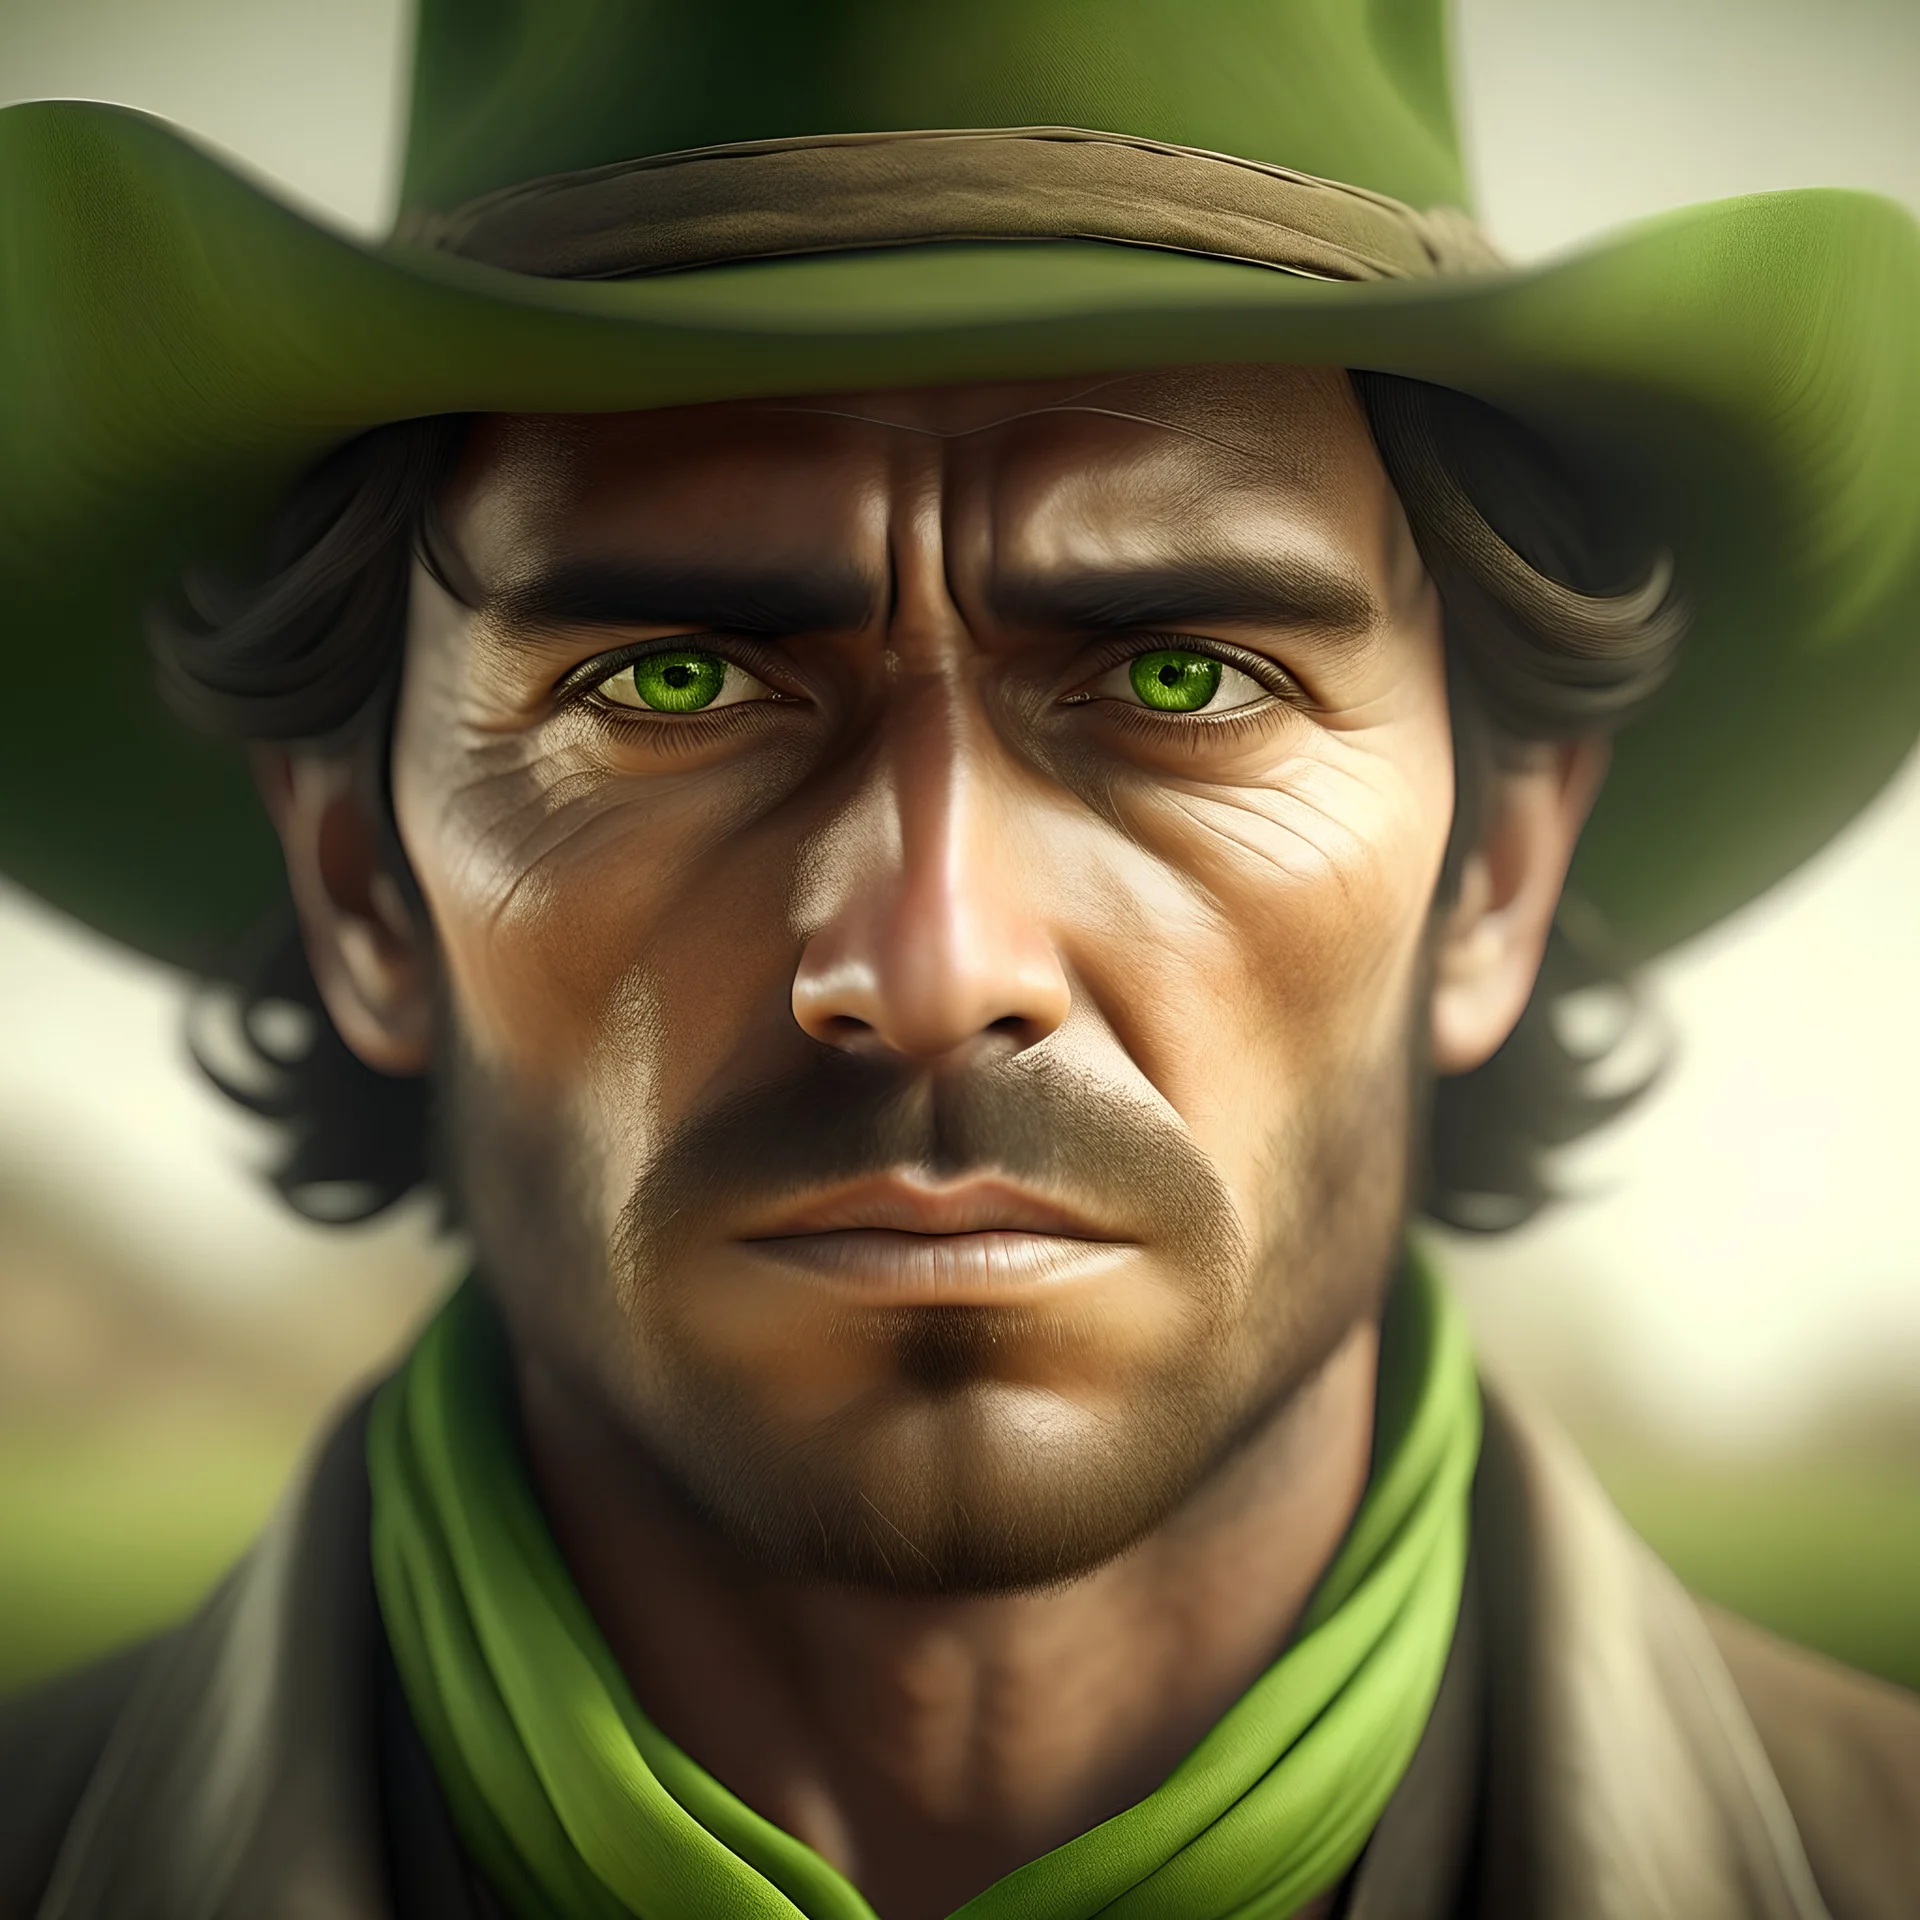 imagen de estilo realista de un hombre gaucho, de ojos de color verde, puesto en primera plana. Contraste suave.